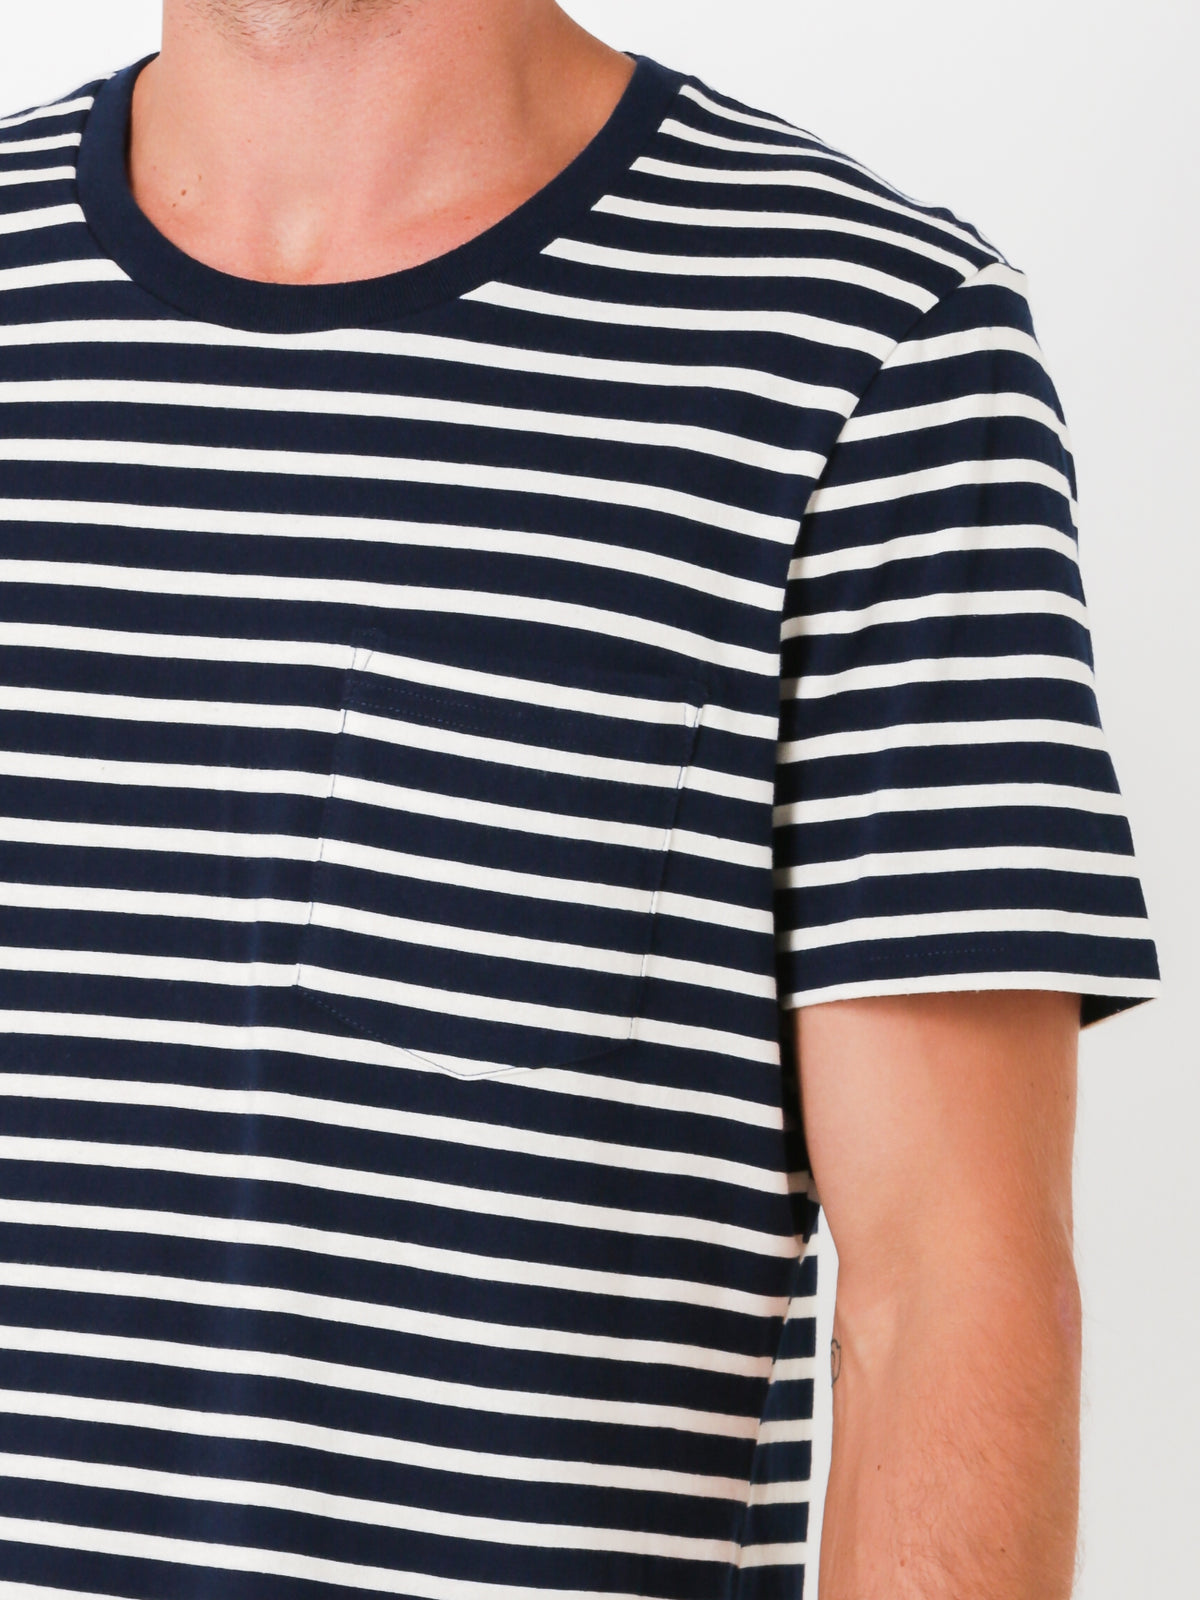 Stripe Pocket T-Shirt in Dark Navy